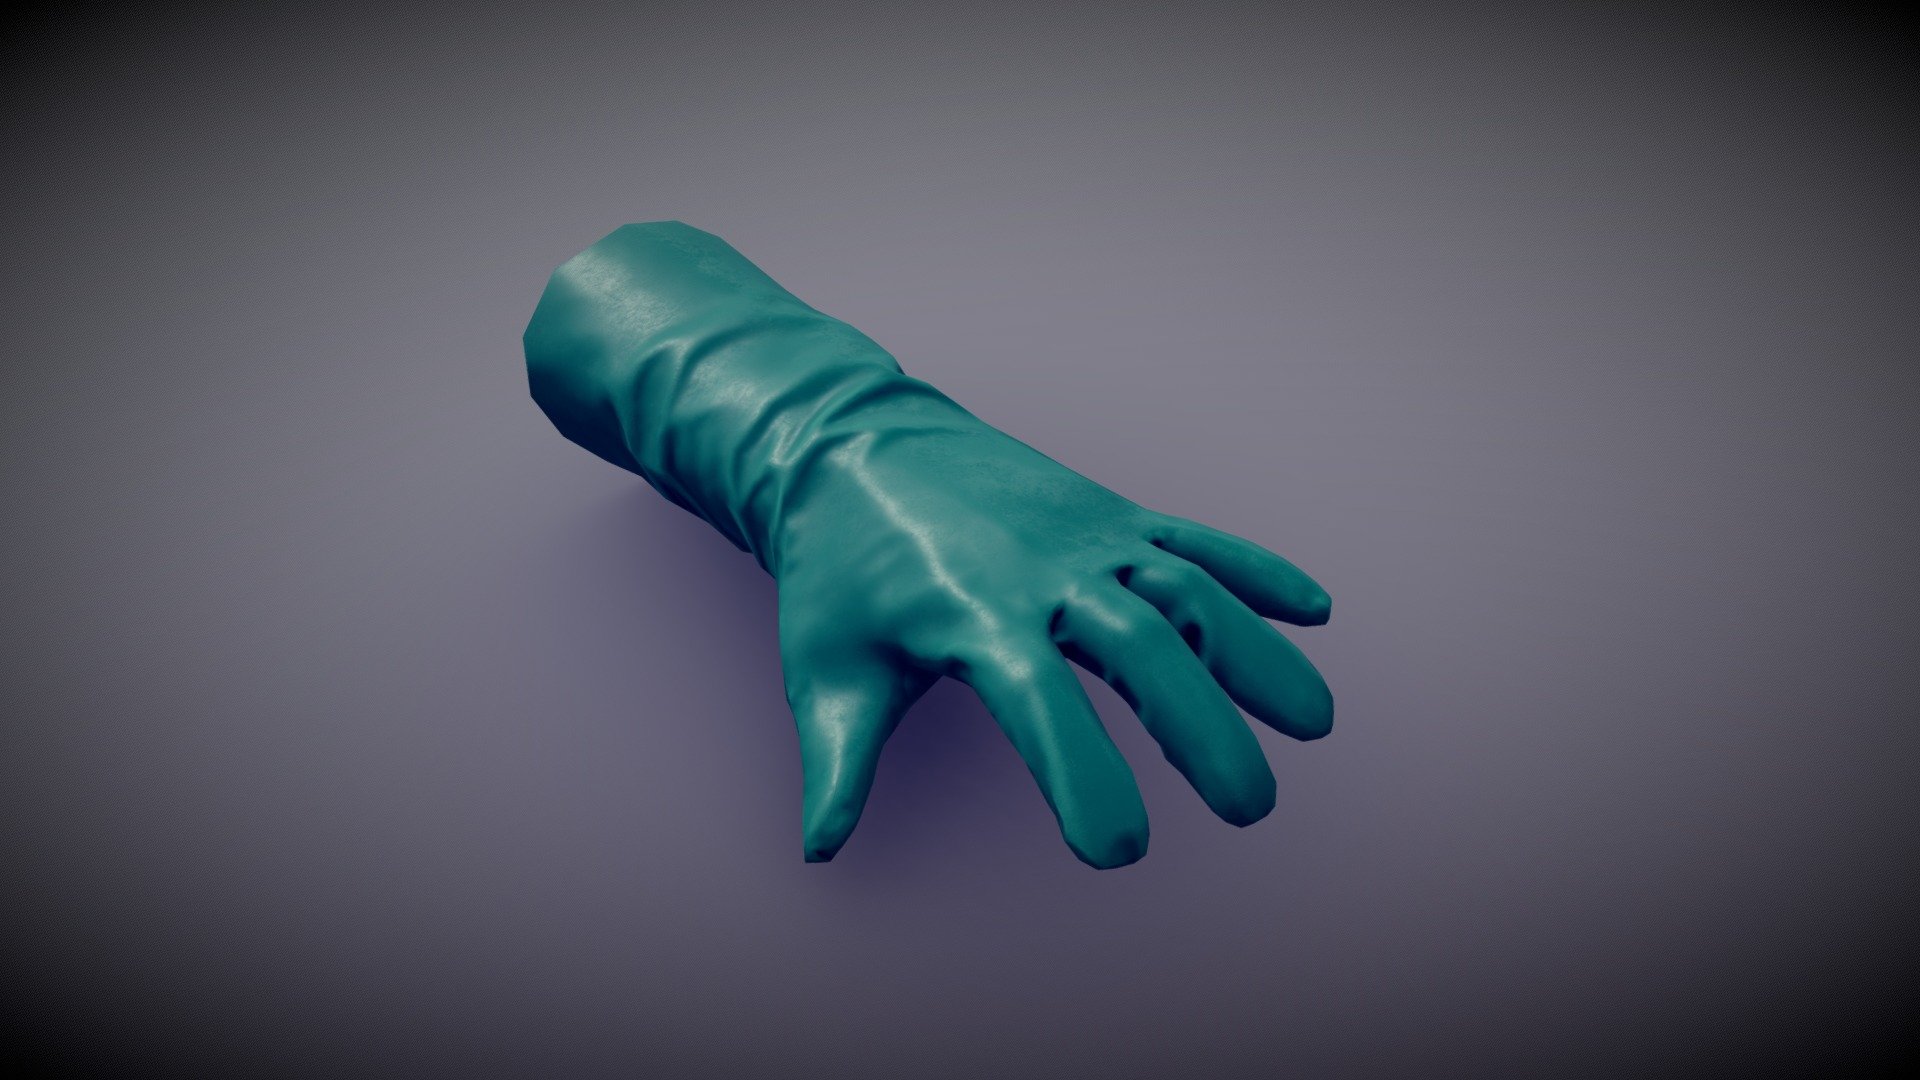 little Marvelous designer exercice - Plastic Glove - Buy Royalty Free 3D model by lomepawol 3d model